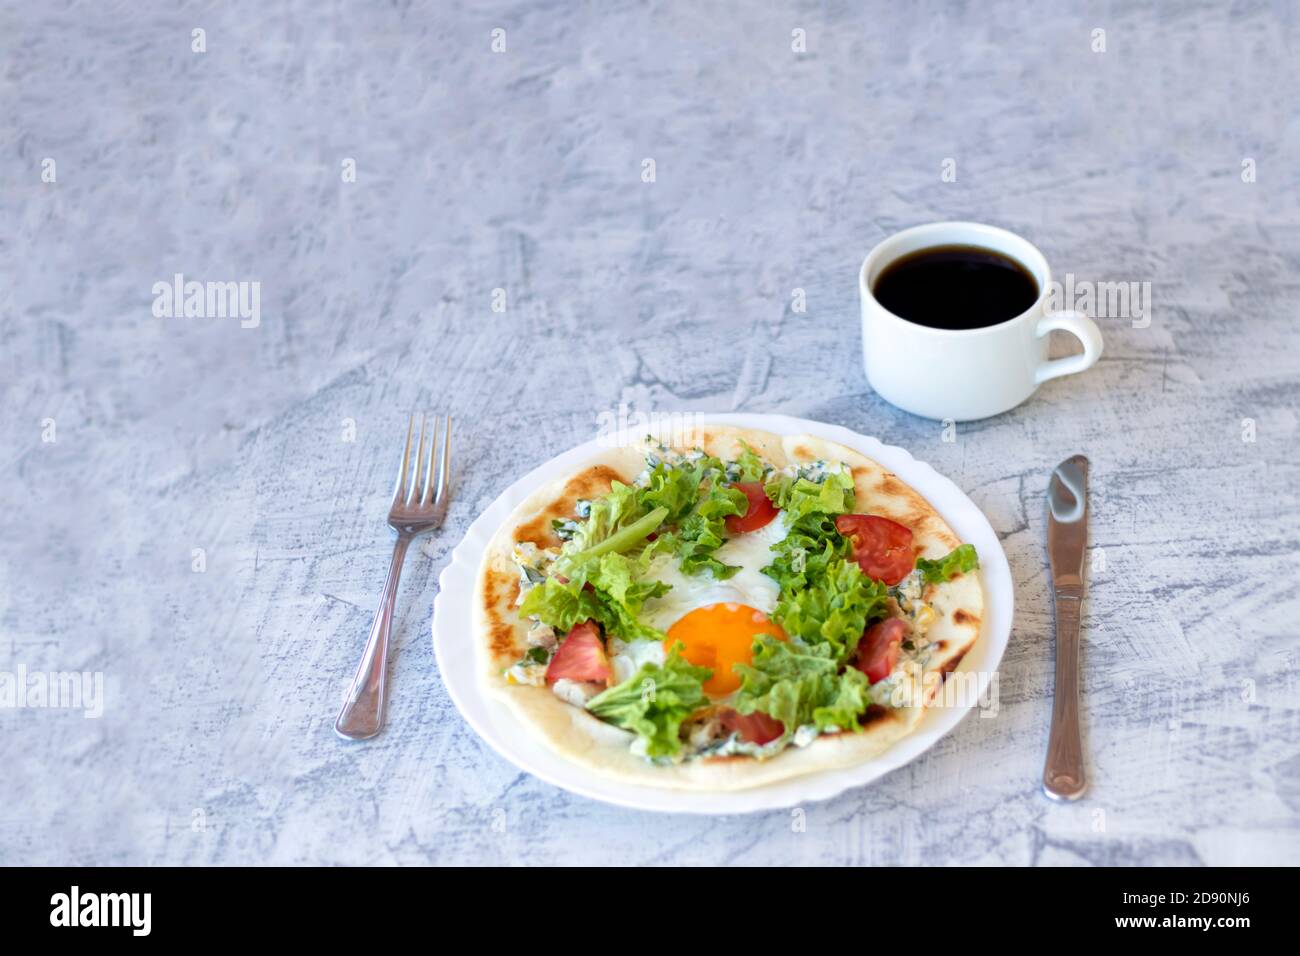 Petit-déjeuner italien avec café. Piadina avec œuf, tomates et salade. Délicieux petit déjeuner servi sur une table texturée. Mise au point douce Banque D'Images